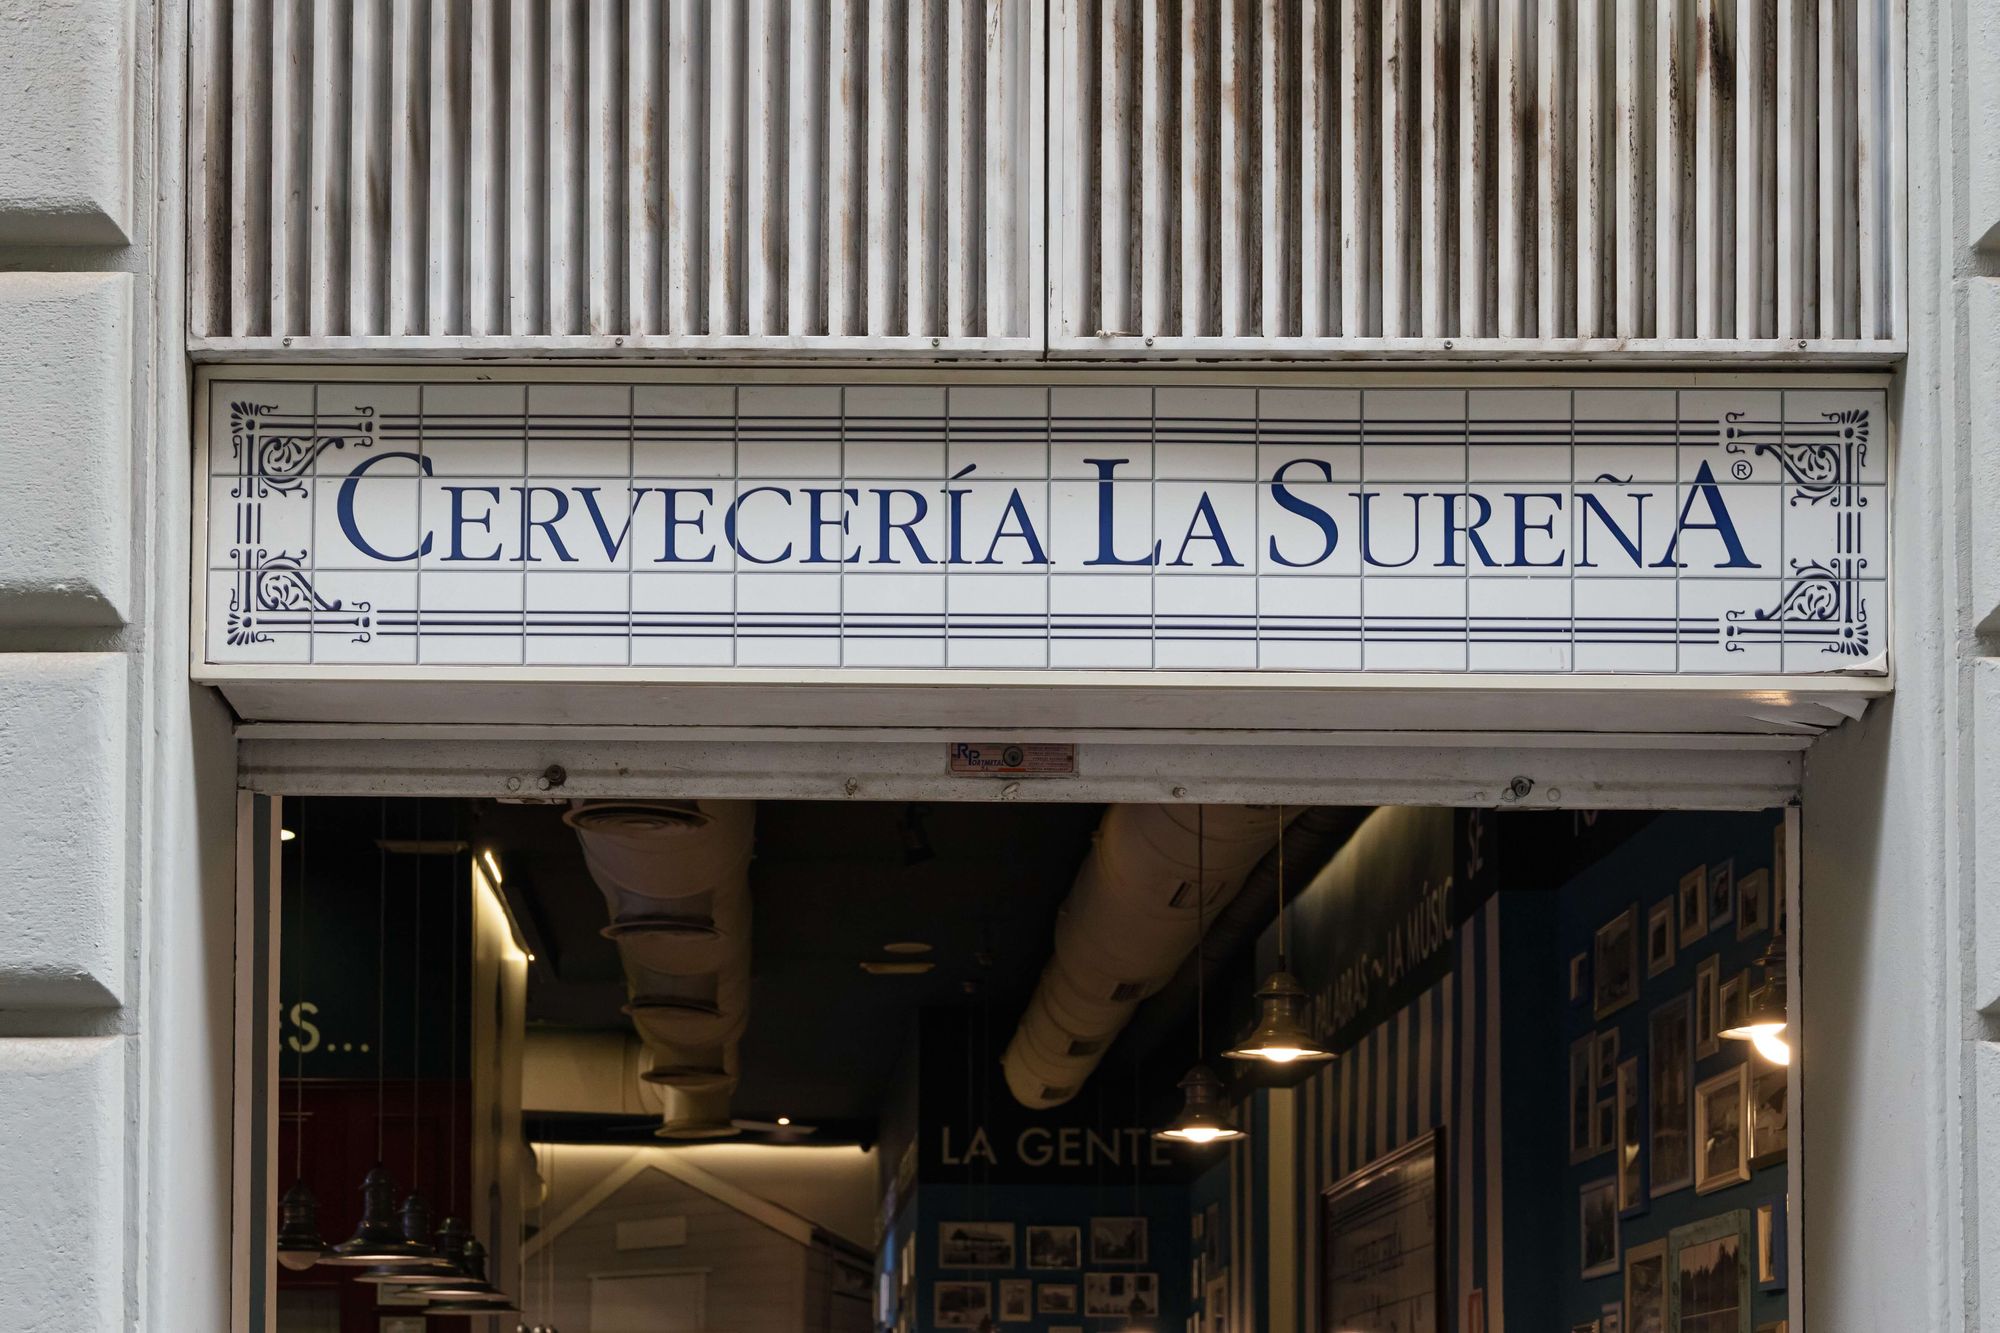 The sign of Cerveceria La Sureña